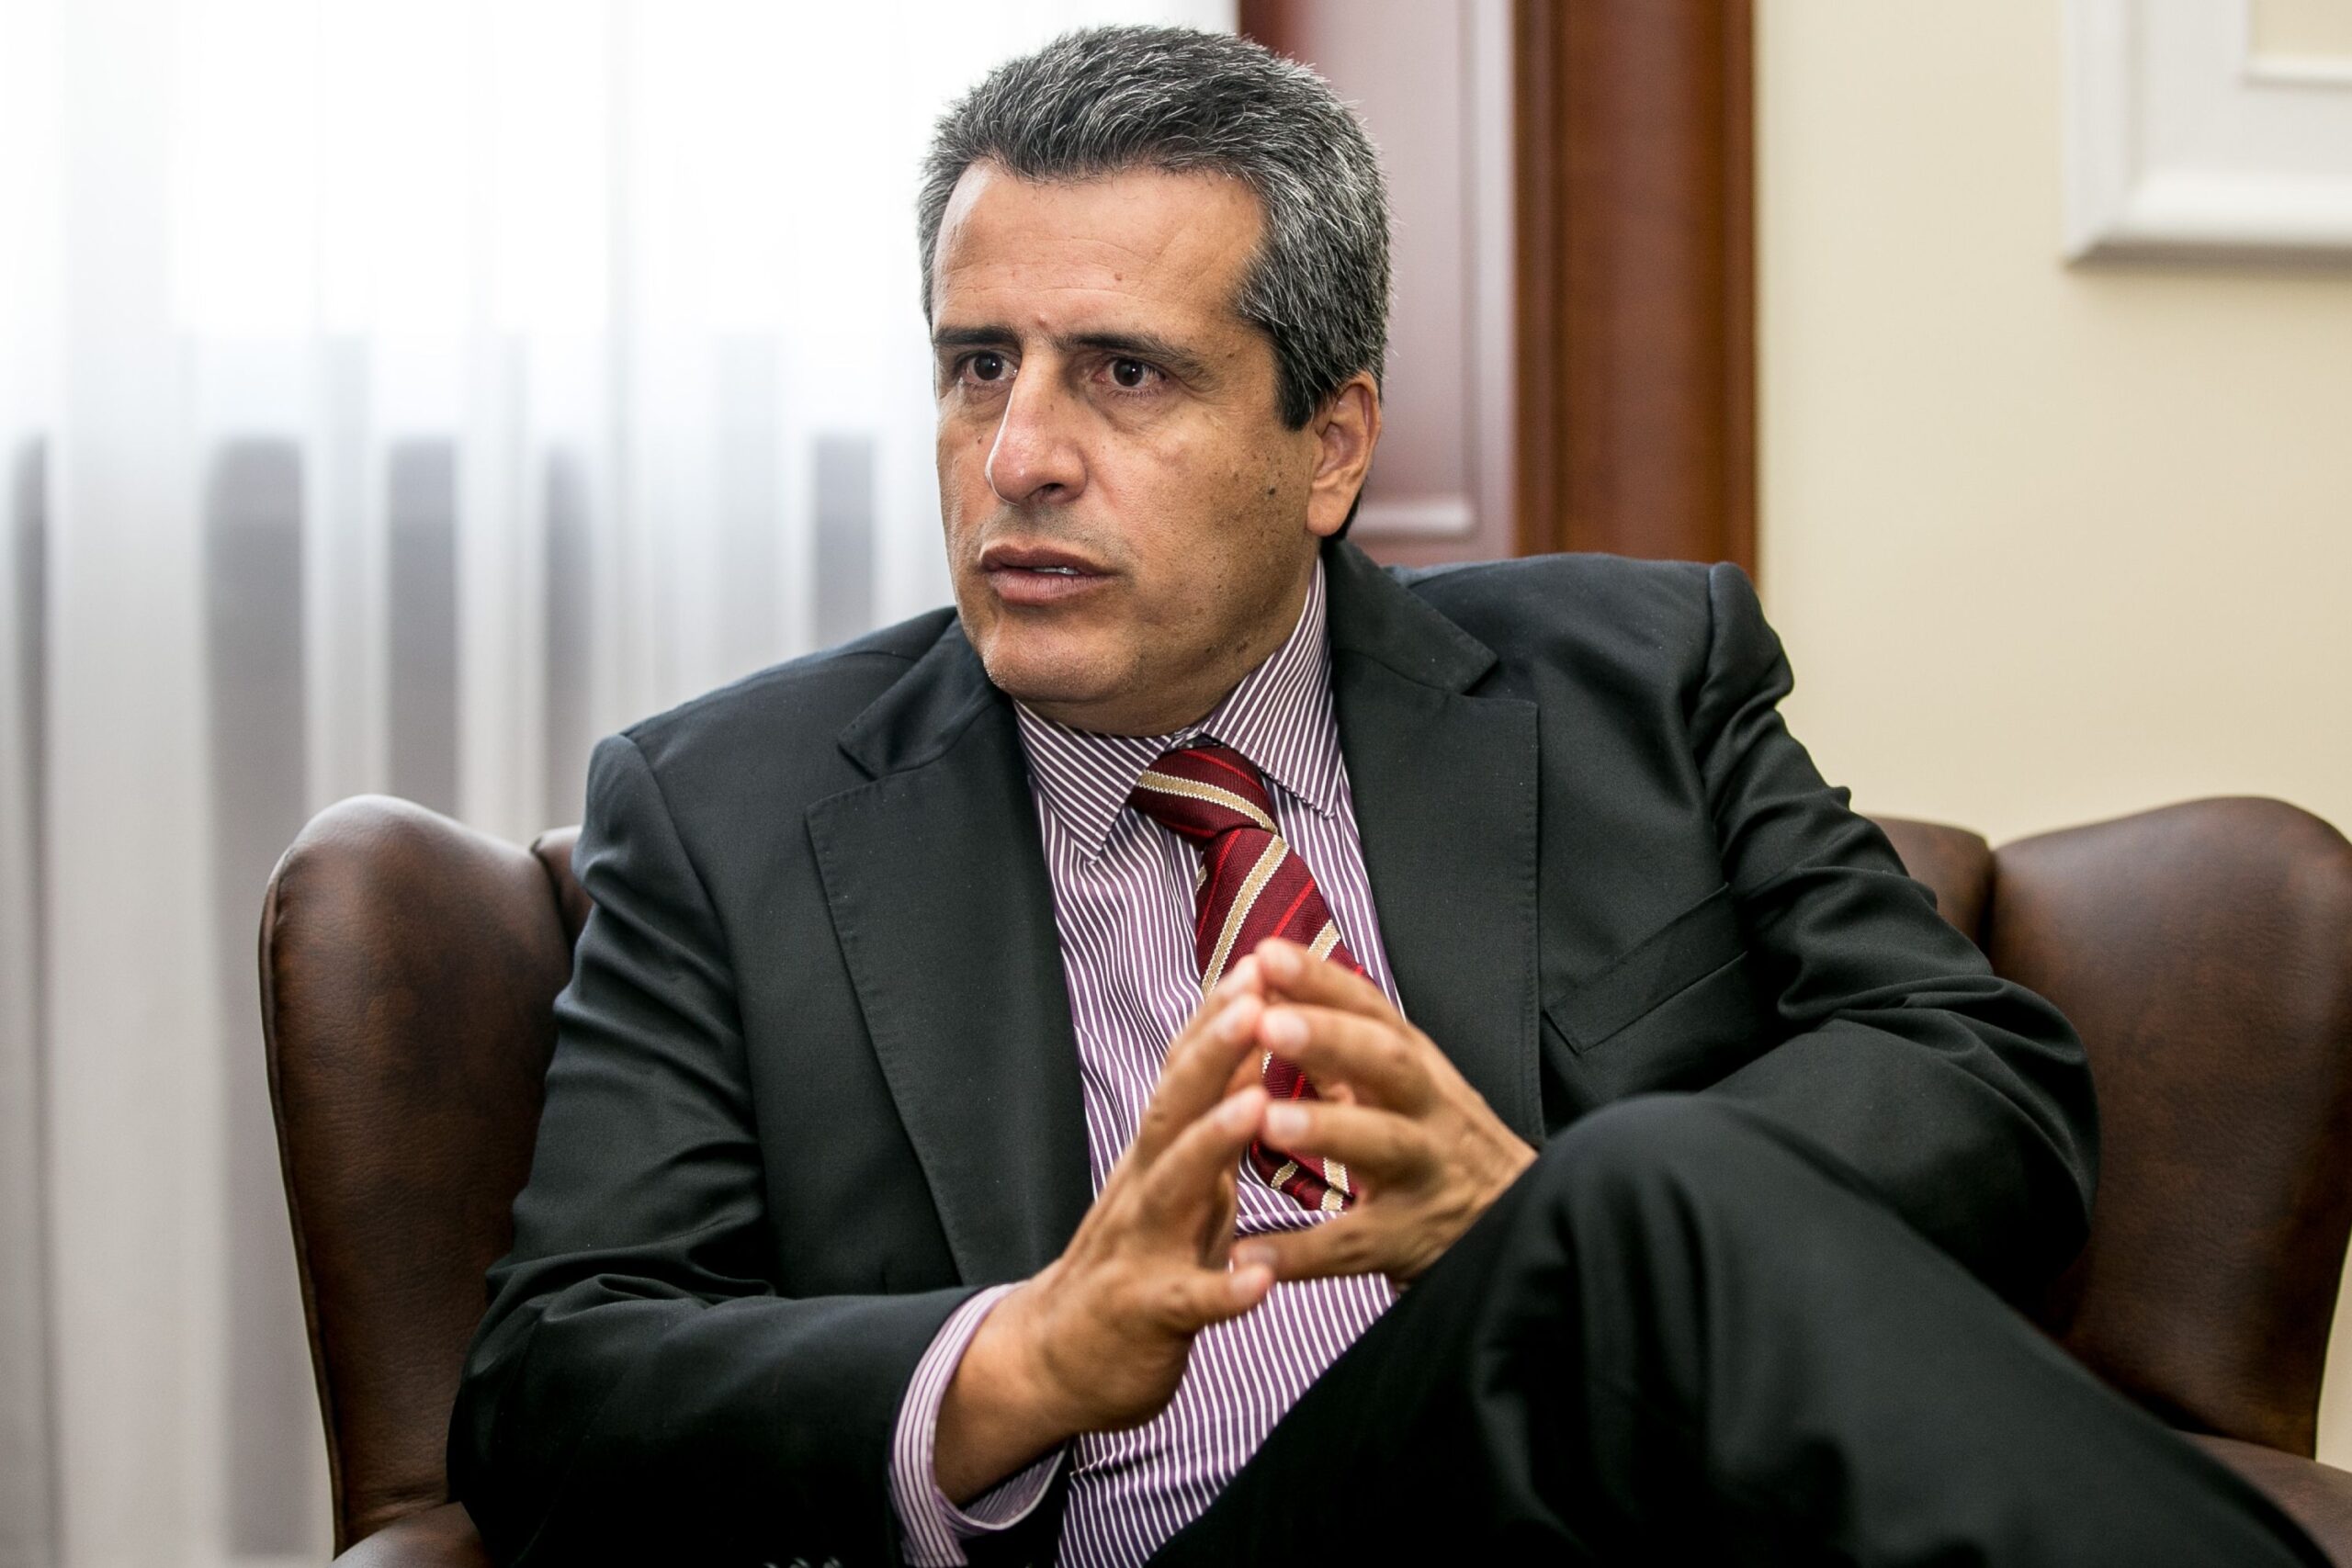 Gobernadores piden la renuncia del Ministro Luis Fernando Velasco